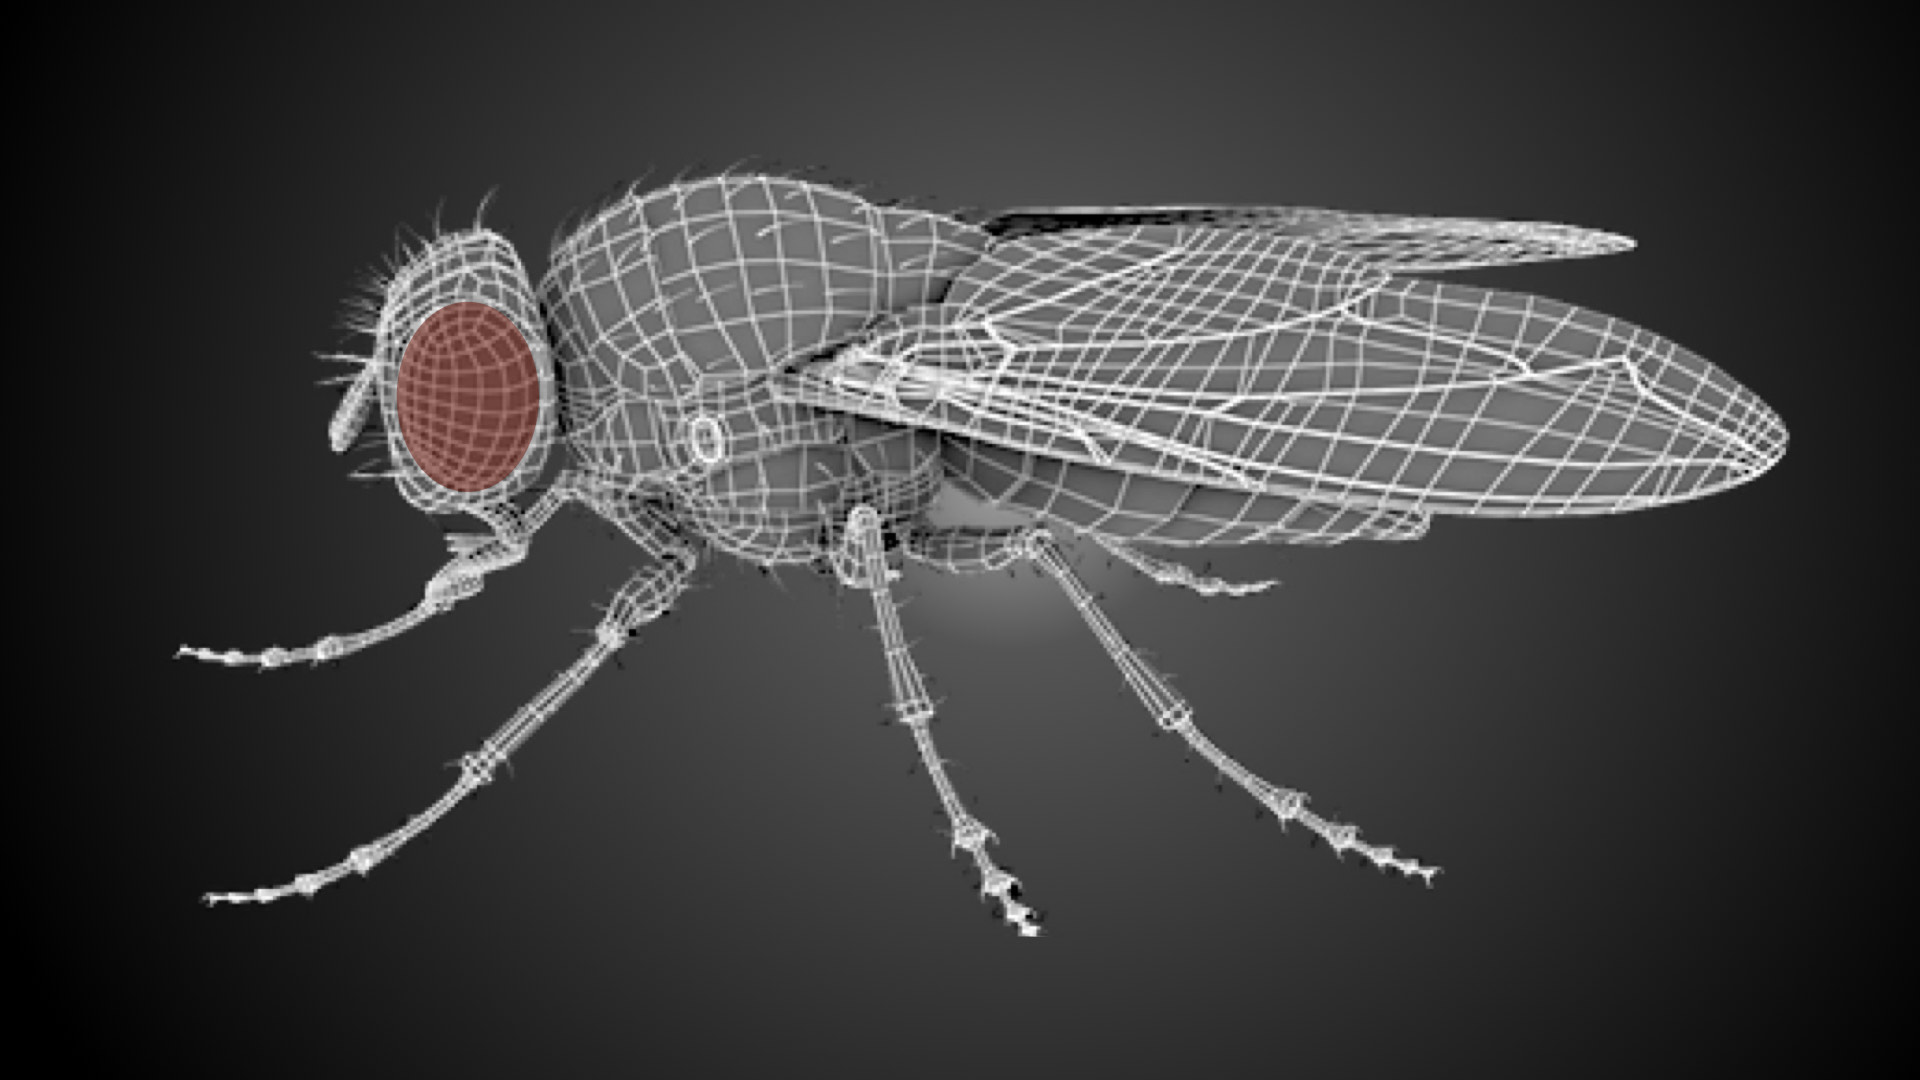 Swiss Drosophila Meeting ‐ EPFL